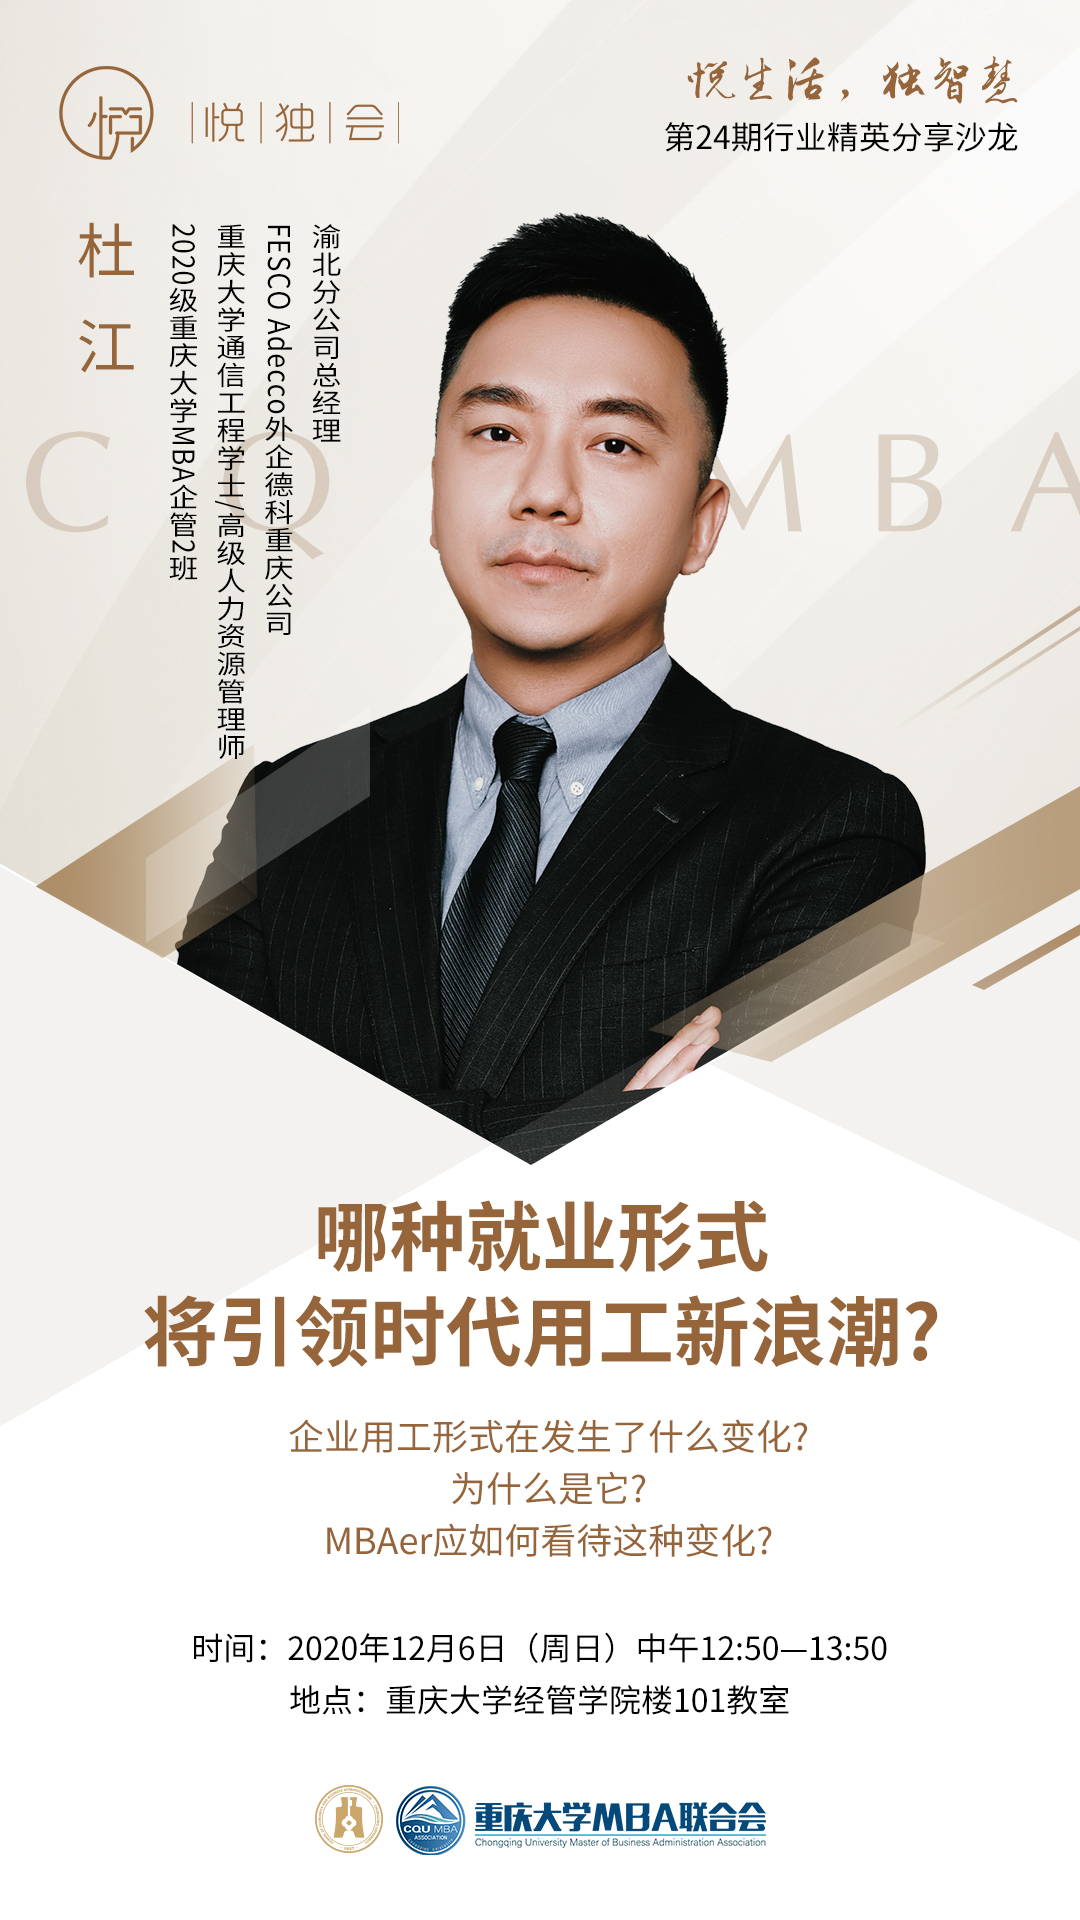 重庆大学MBA悦独会第24期预告 | 杜江：哪种就业形式将引领时代用工新浪潮？